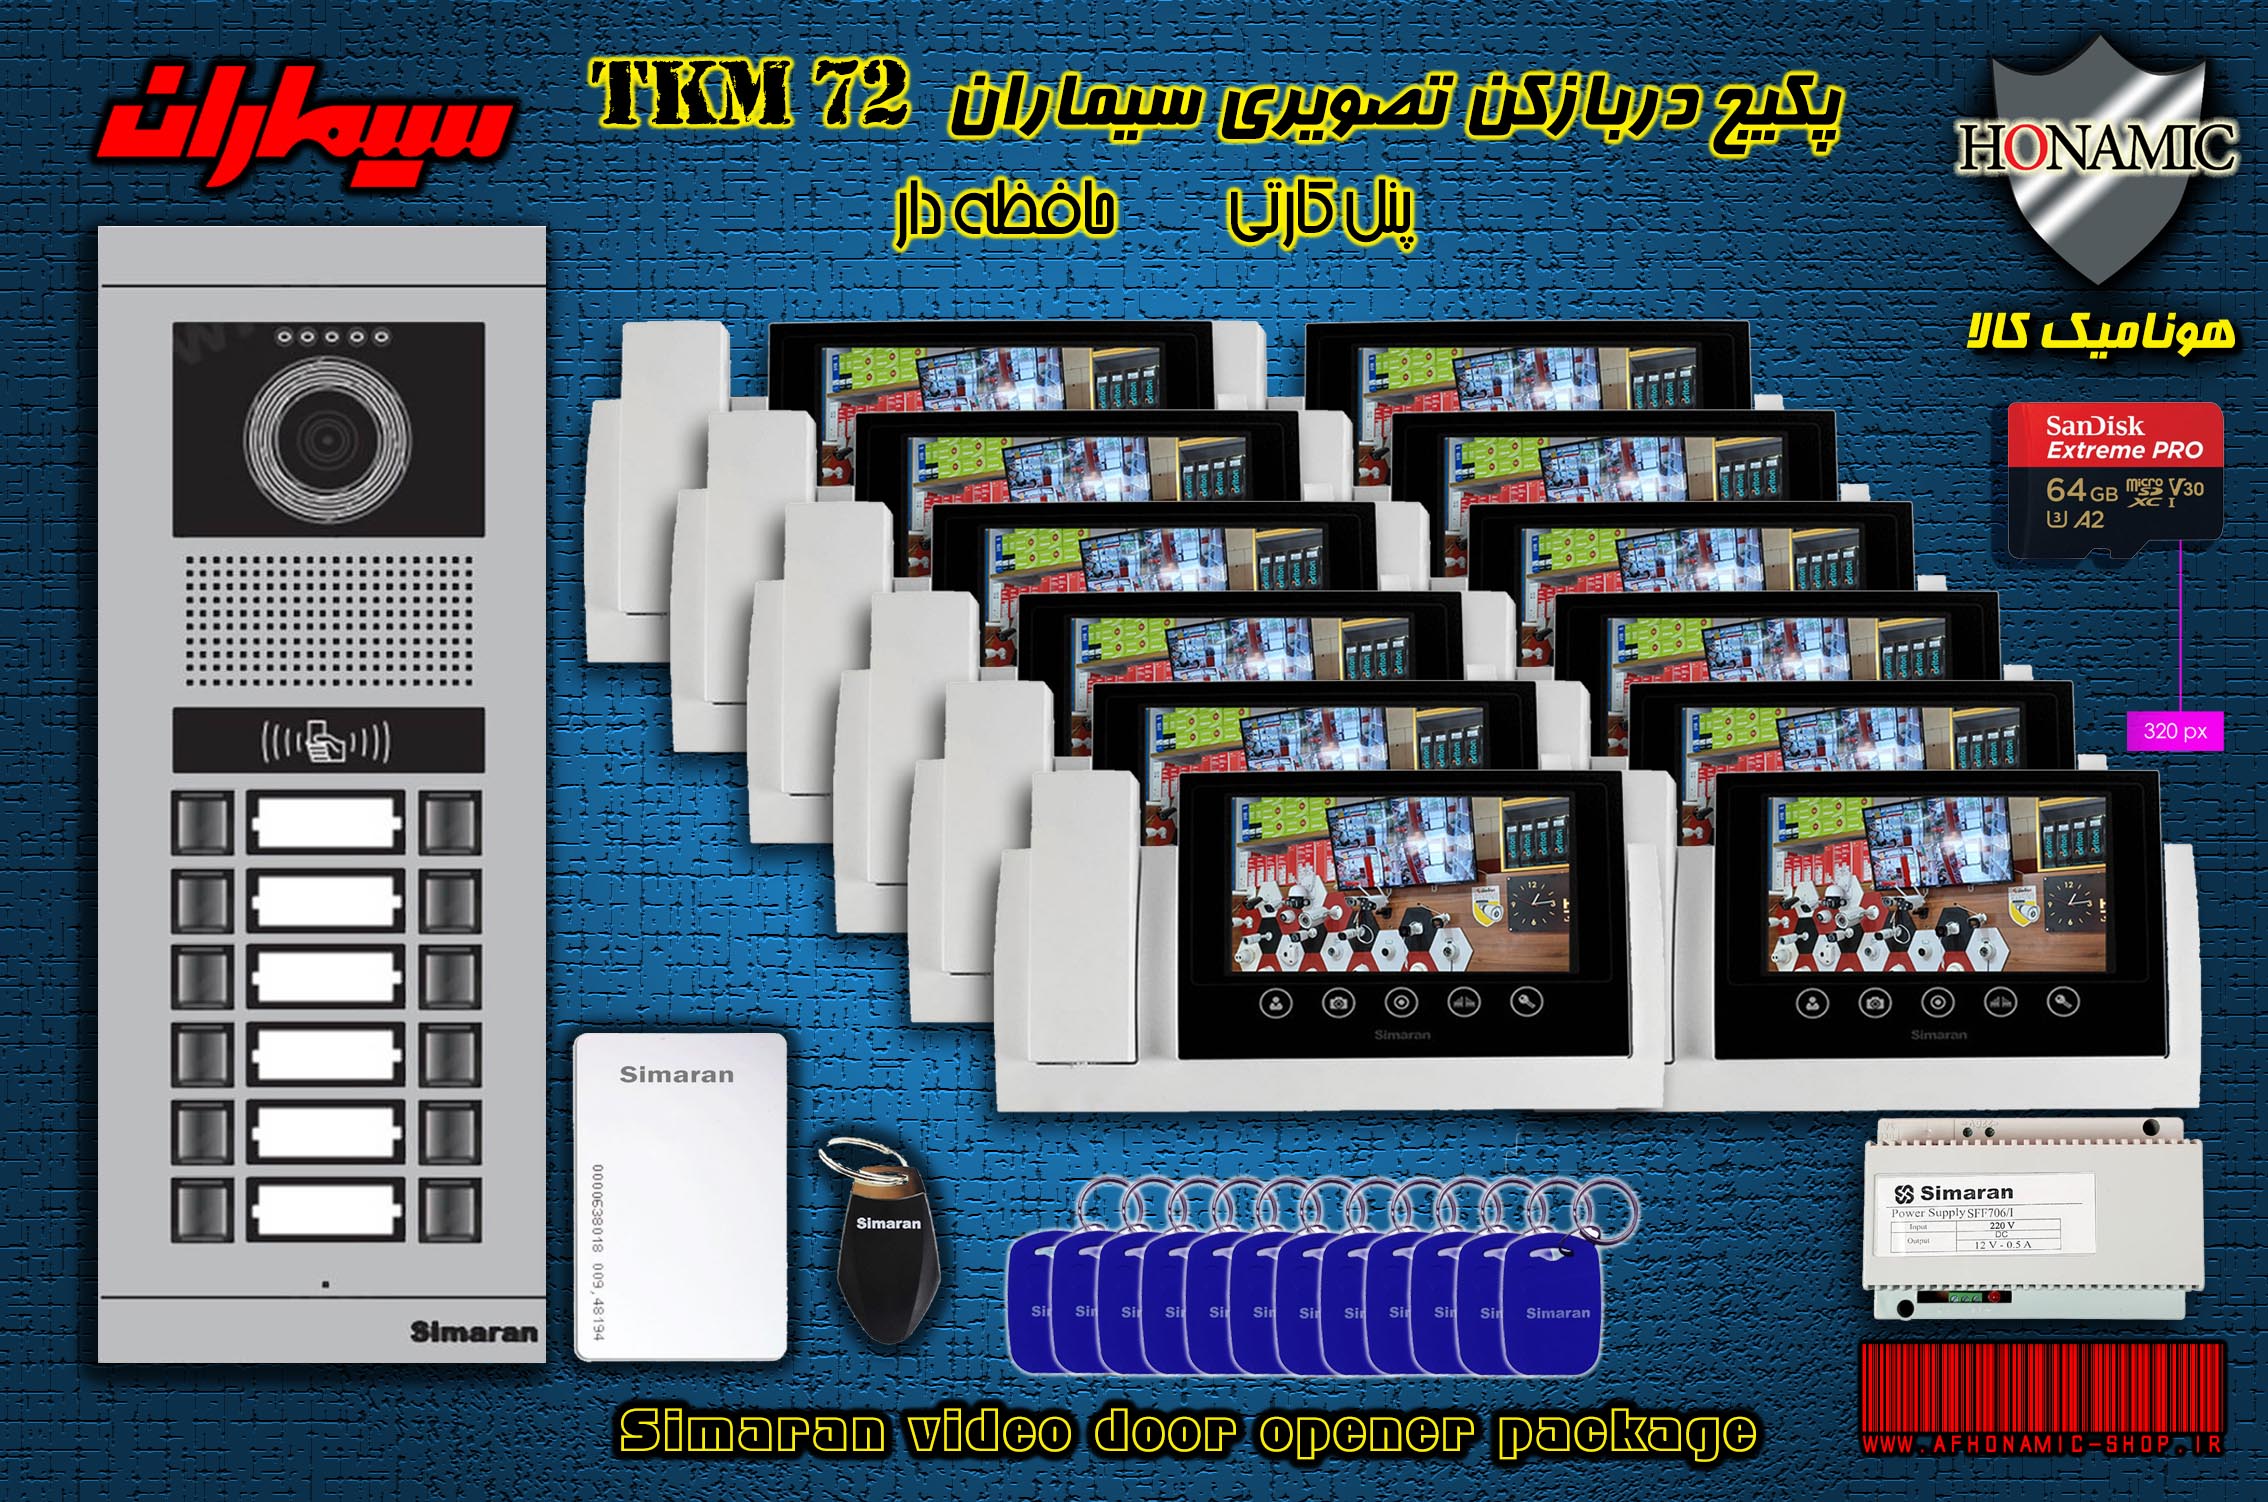 پکیج دوازده 12 واحدی آیفون تصویری دربازکن تصویری سیماران حافظه دار پنل کارتی با گوشی 72-TKM